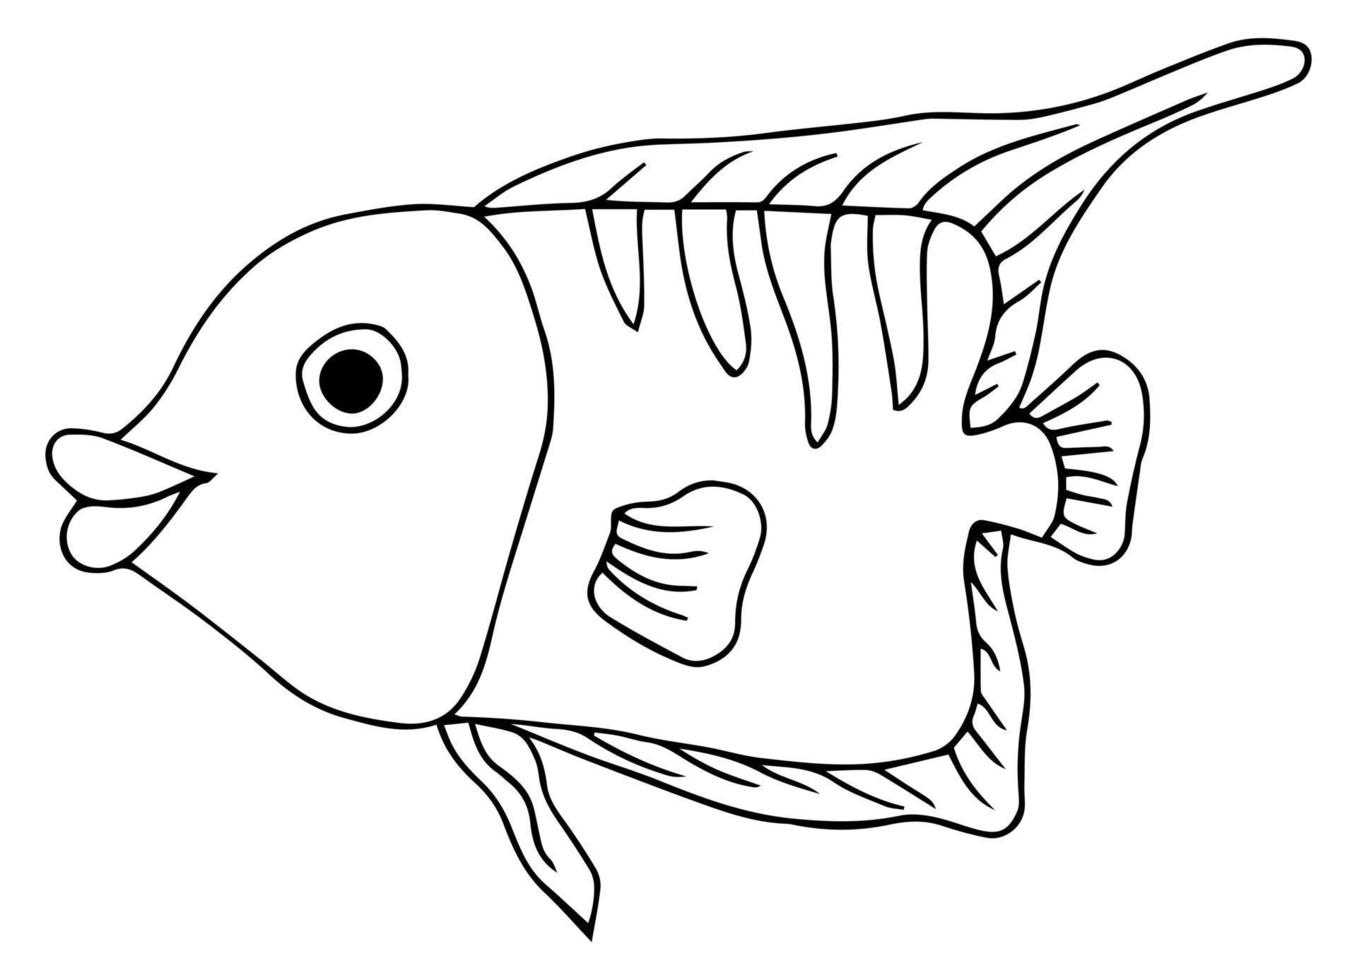 süßer tropischer Fisch - ein Bild zum Ausmalen. Vektor linearer Fisch - tierisches Gestaltungselement. Aquarienfische - Haustier. Gliederung. Handzeichnung